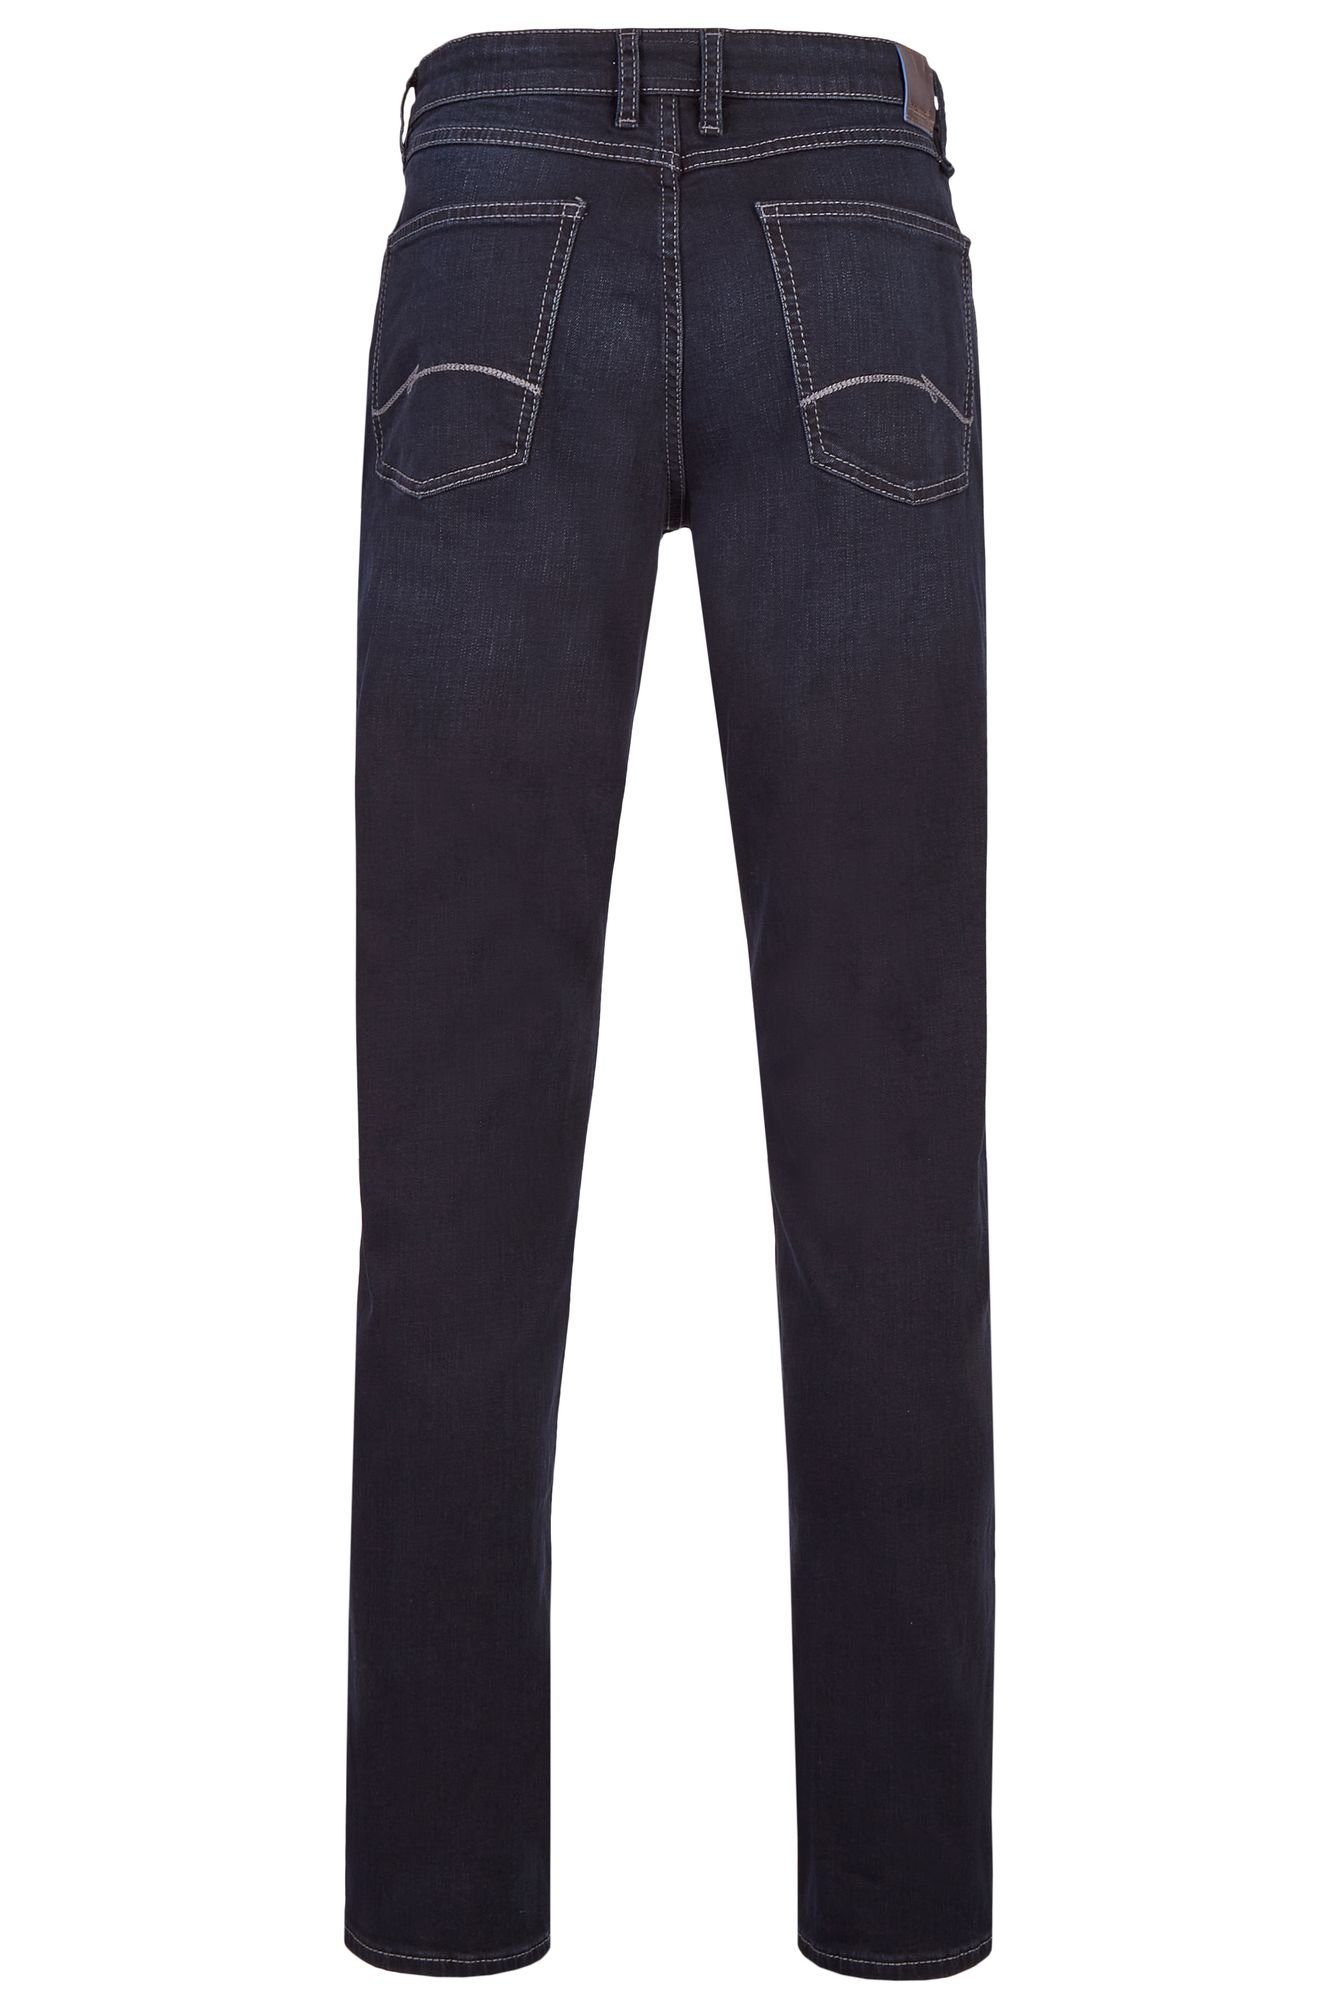 black 5-Pocket-Jeans blue Hattric 688465-9285 (89)